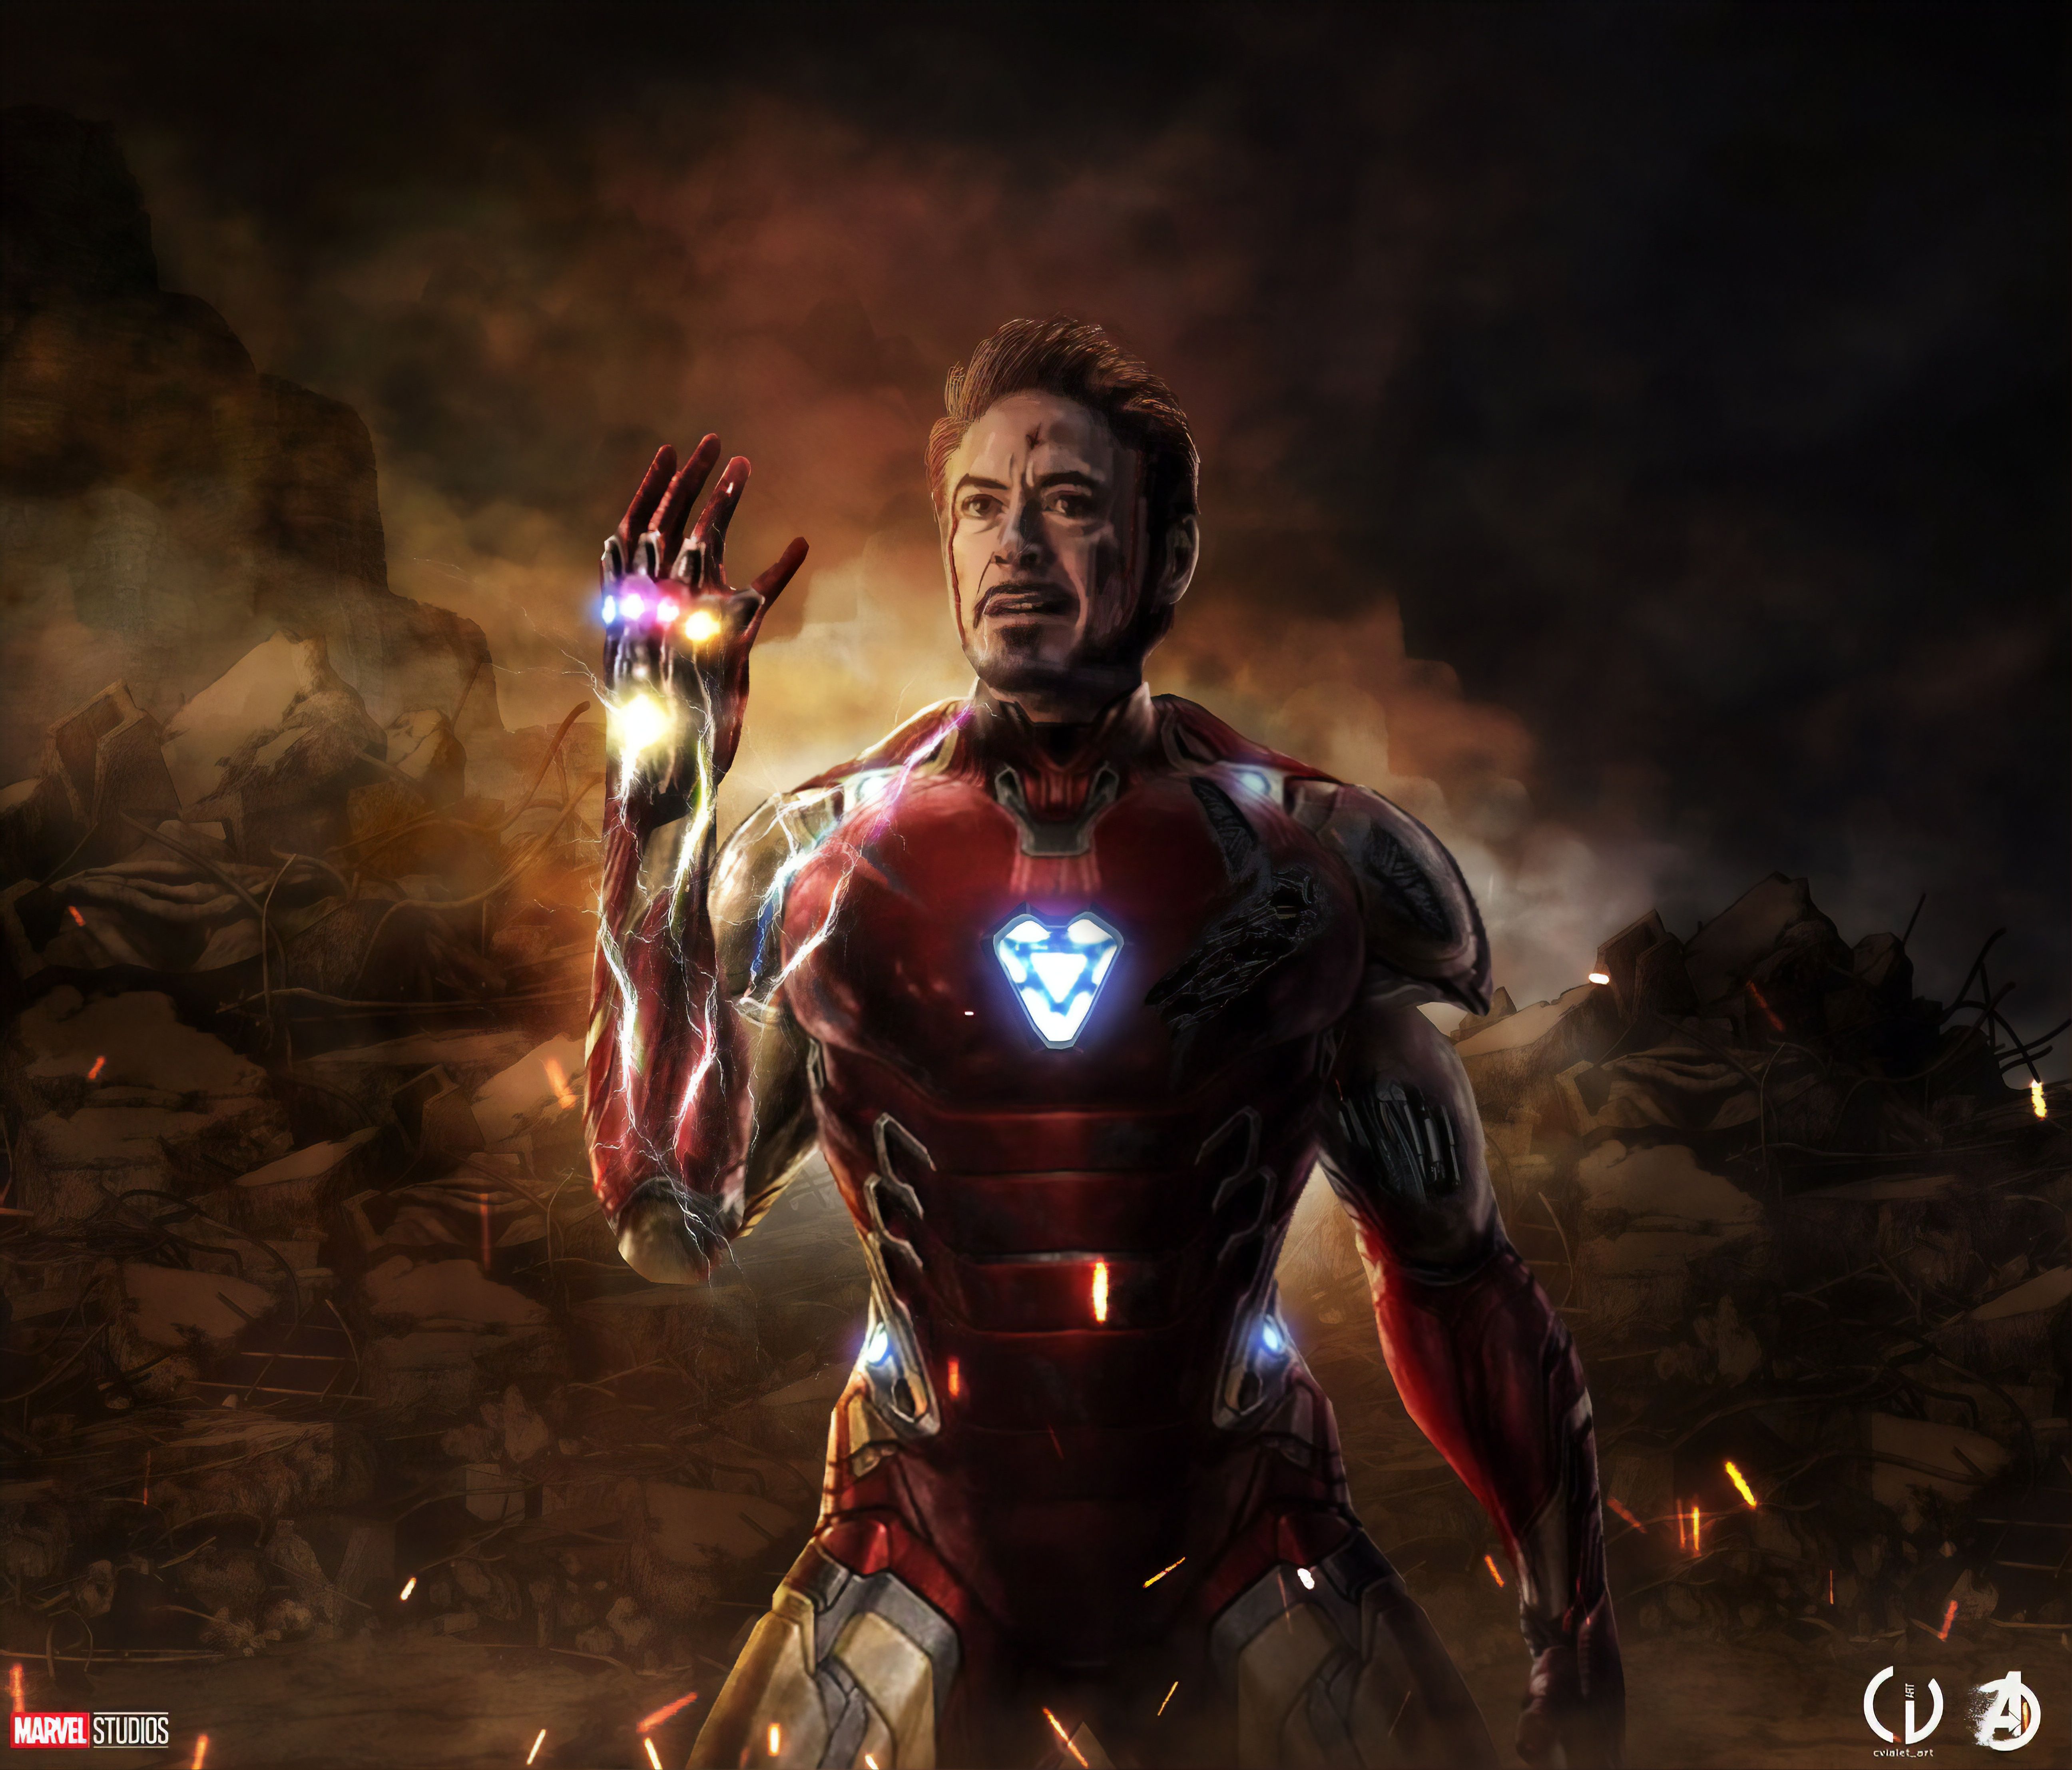 Iron Man Endgame 4K Wallpaper Free Iron Man Endgame 4K Background